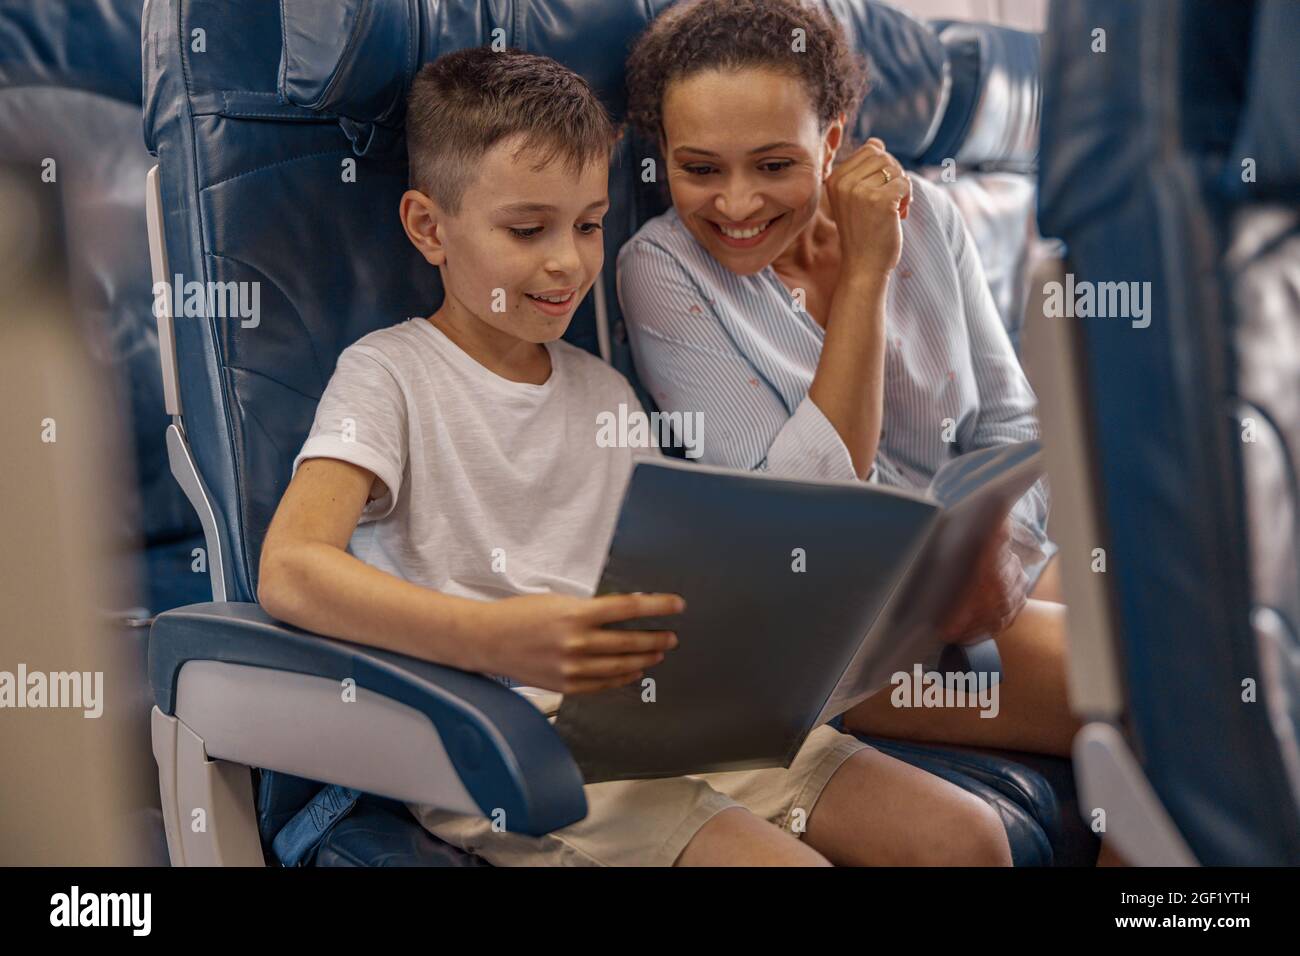 Niño, niño a bordo sosteniendo un libro y mirando a través de él junto con su mamá durante el vuelo. Tripulación de cabina que proporciona servicio a la familia en avión Foto de stock